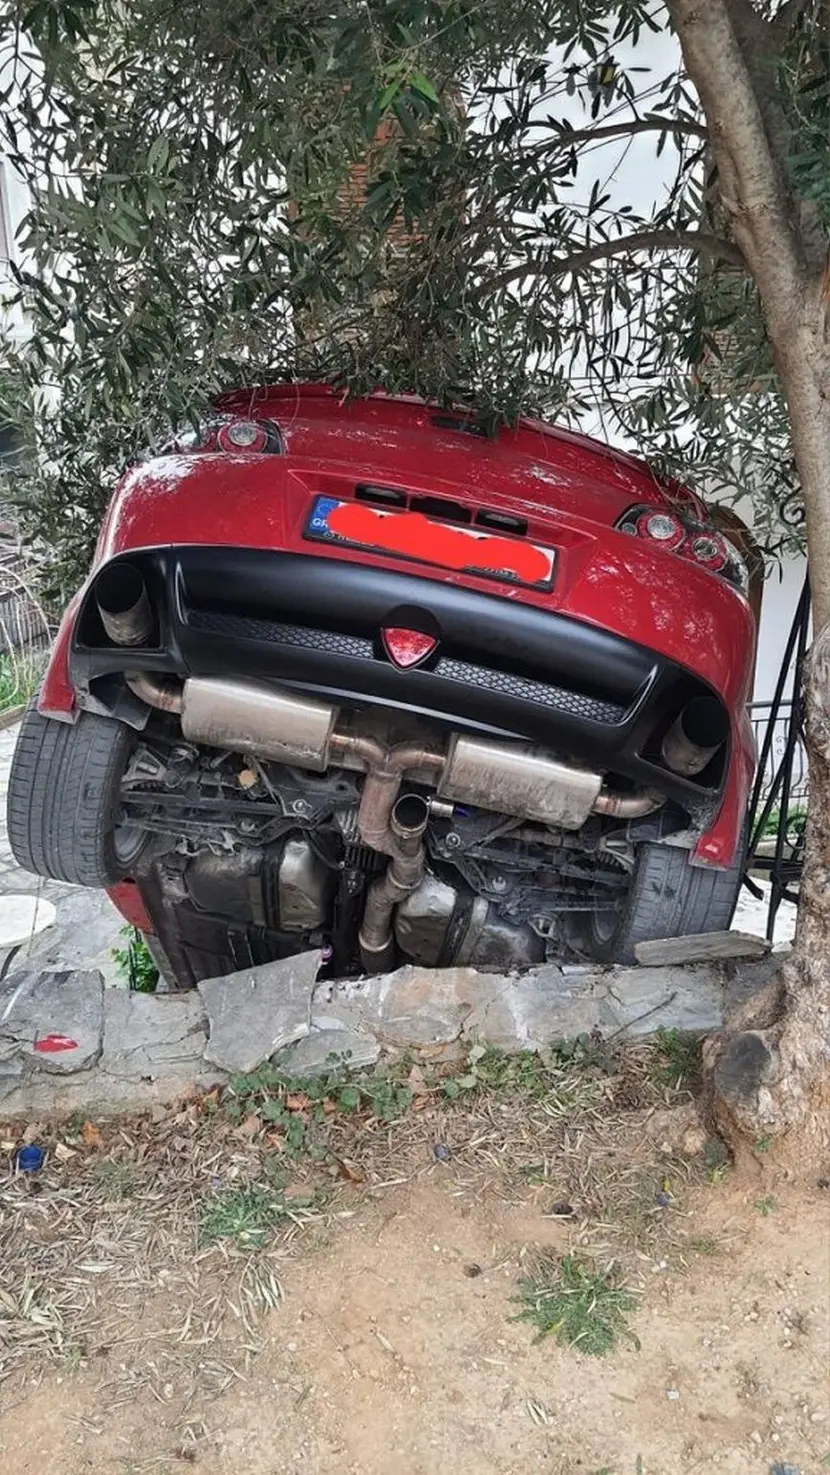 Ασύλληπτες εικόνες στη Θεσσαλονίκη: Αυτοκίνητο έφυγε από το δρόμο και κατέληξε σε αυλή σπιτιού - ΝΕΑ